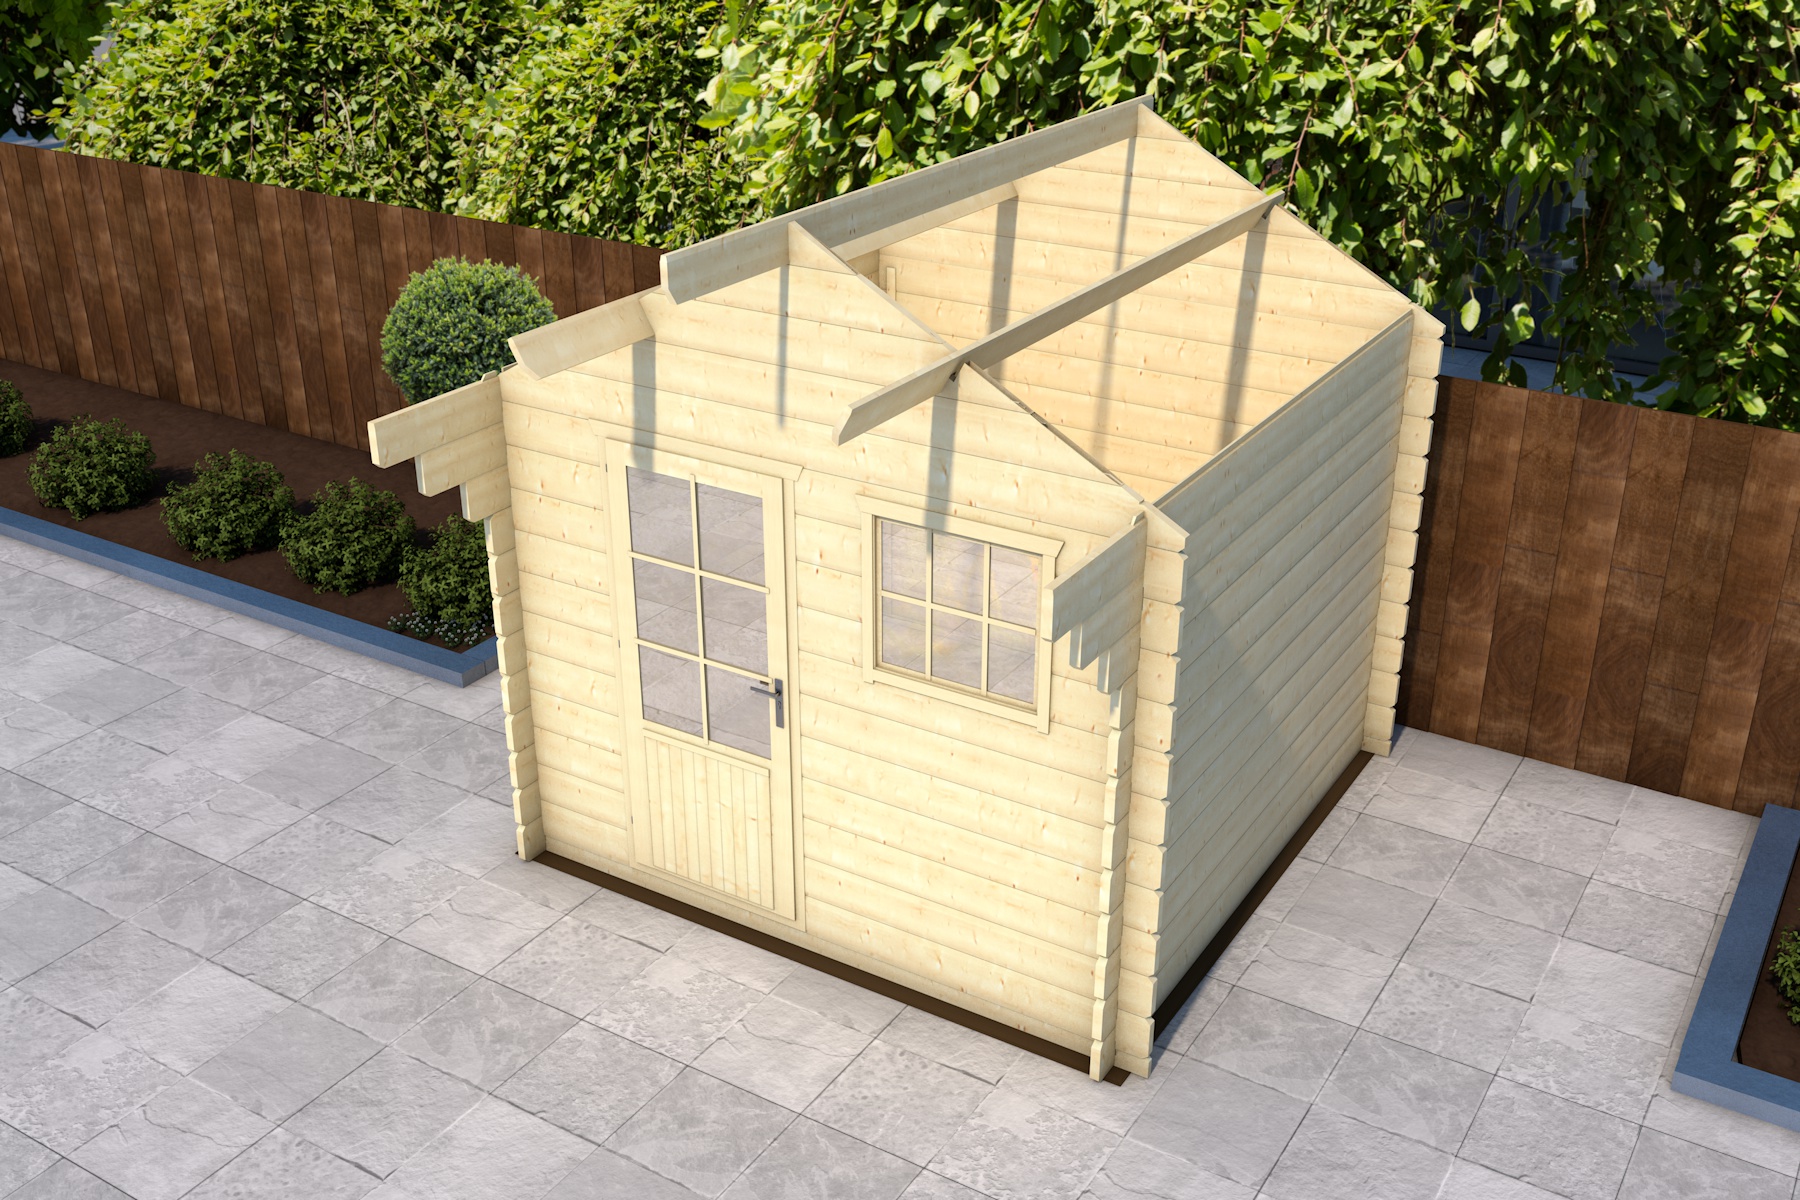 Stappenplan: Zelf een houten blokhut / tuinhuis | Van Kooten Blog